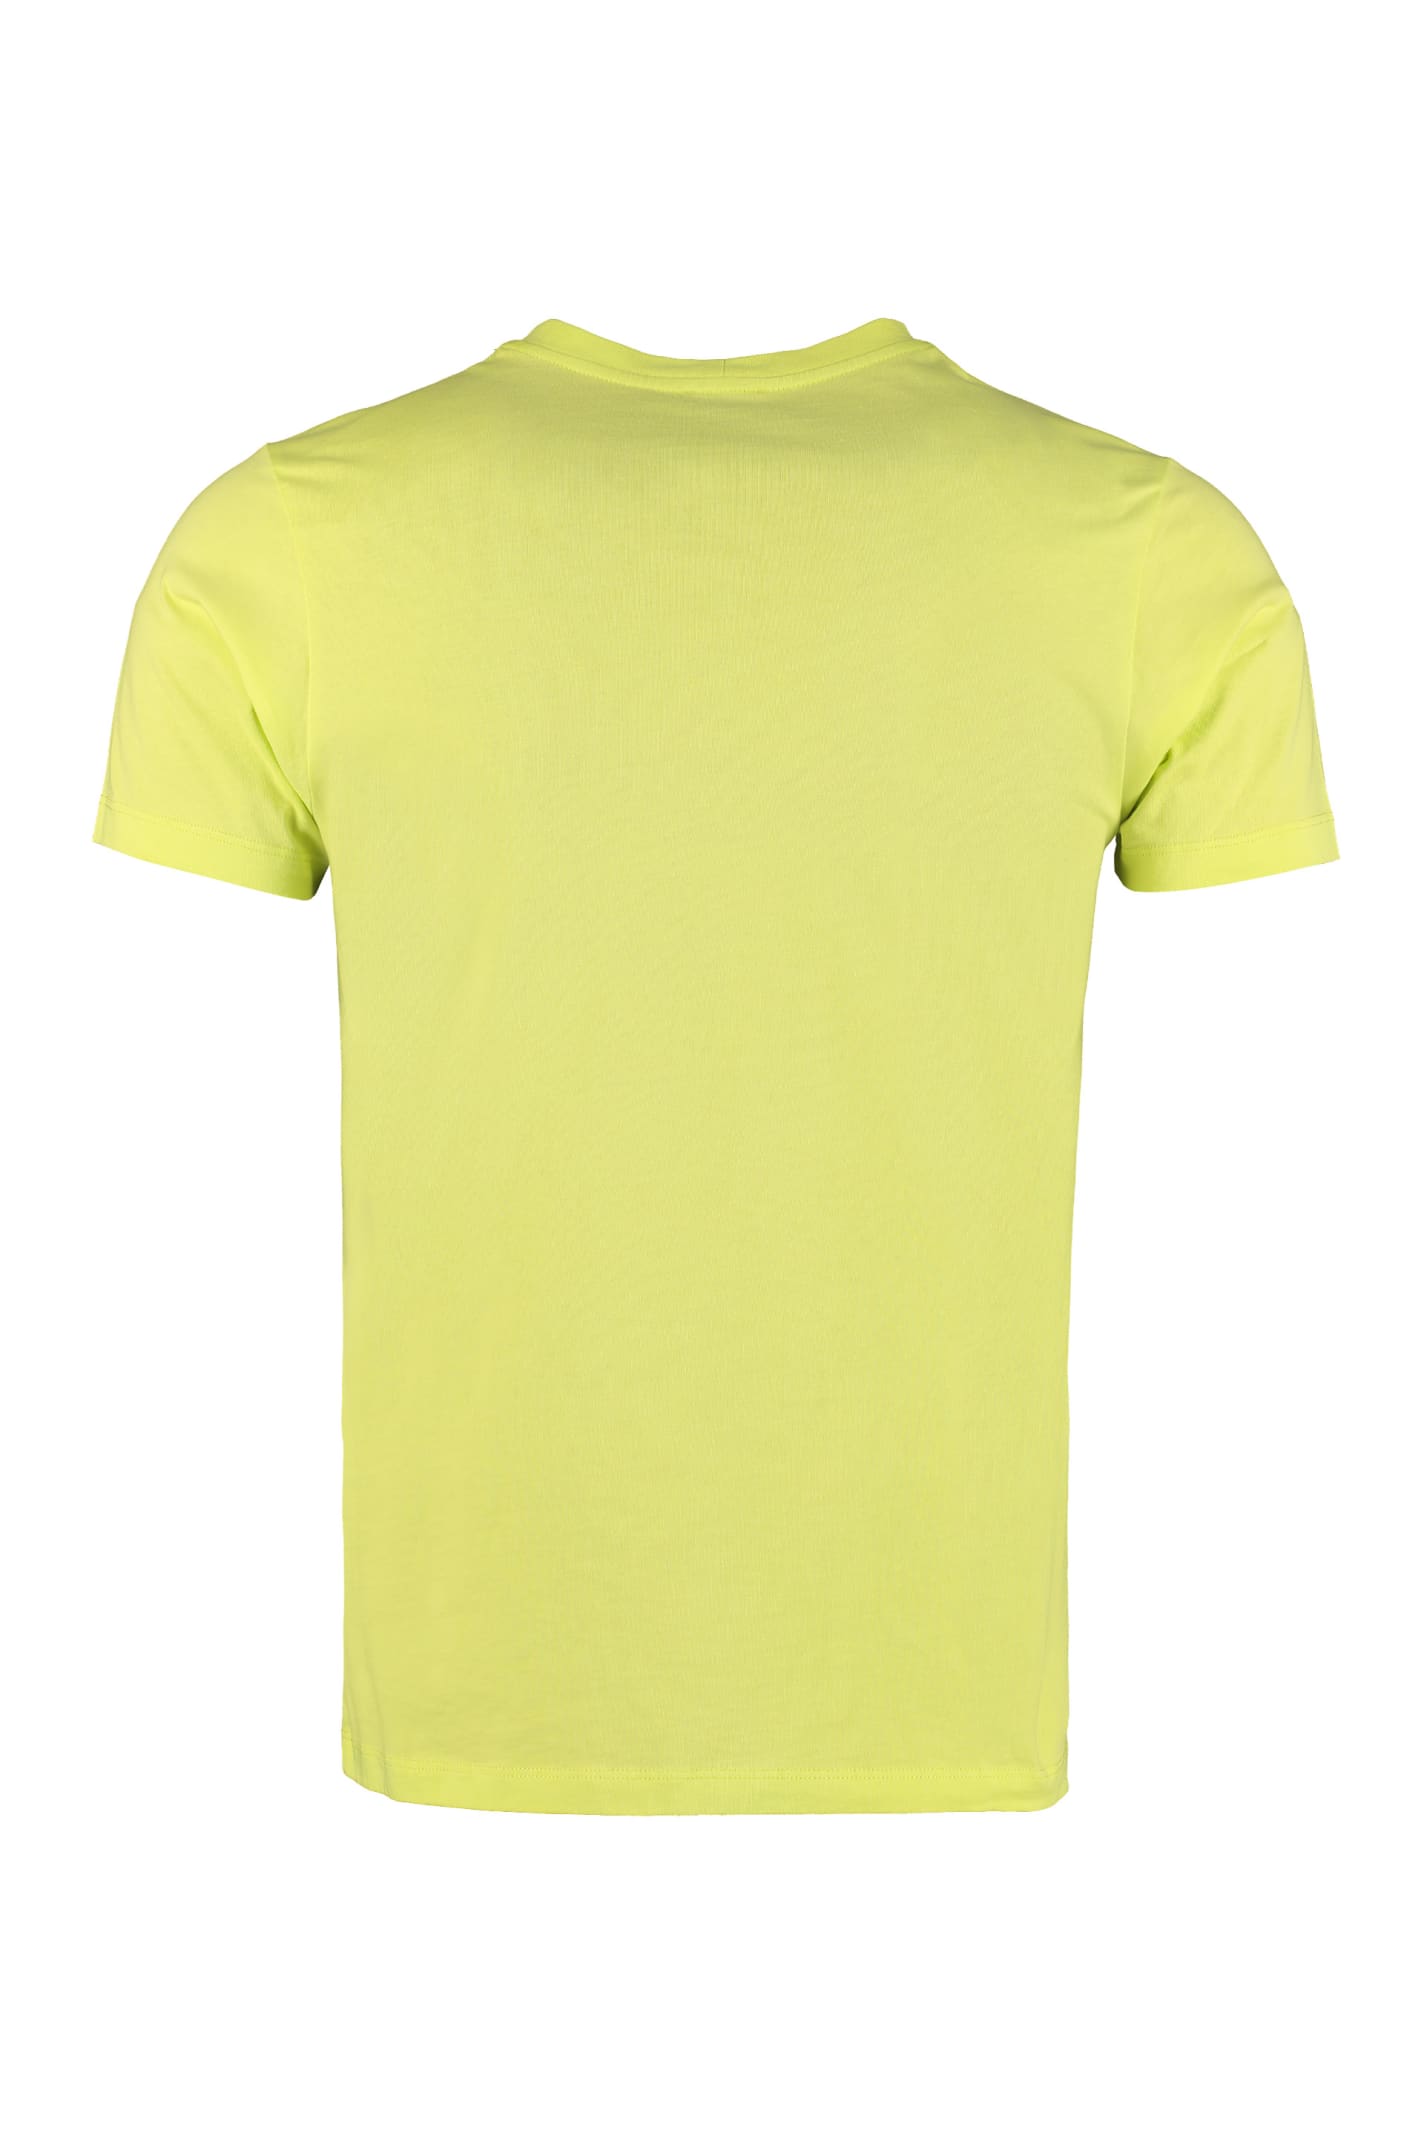 kenzo shirt yellow